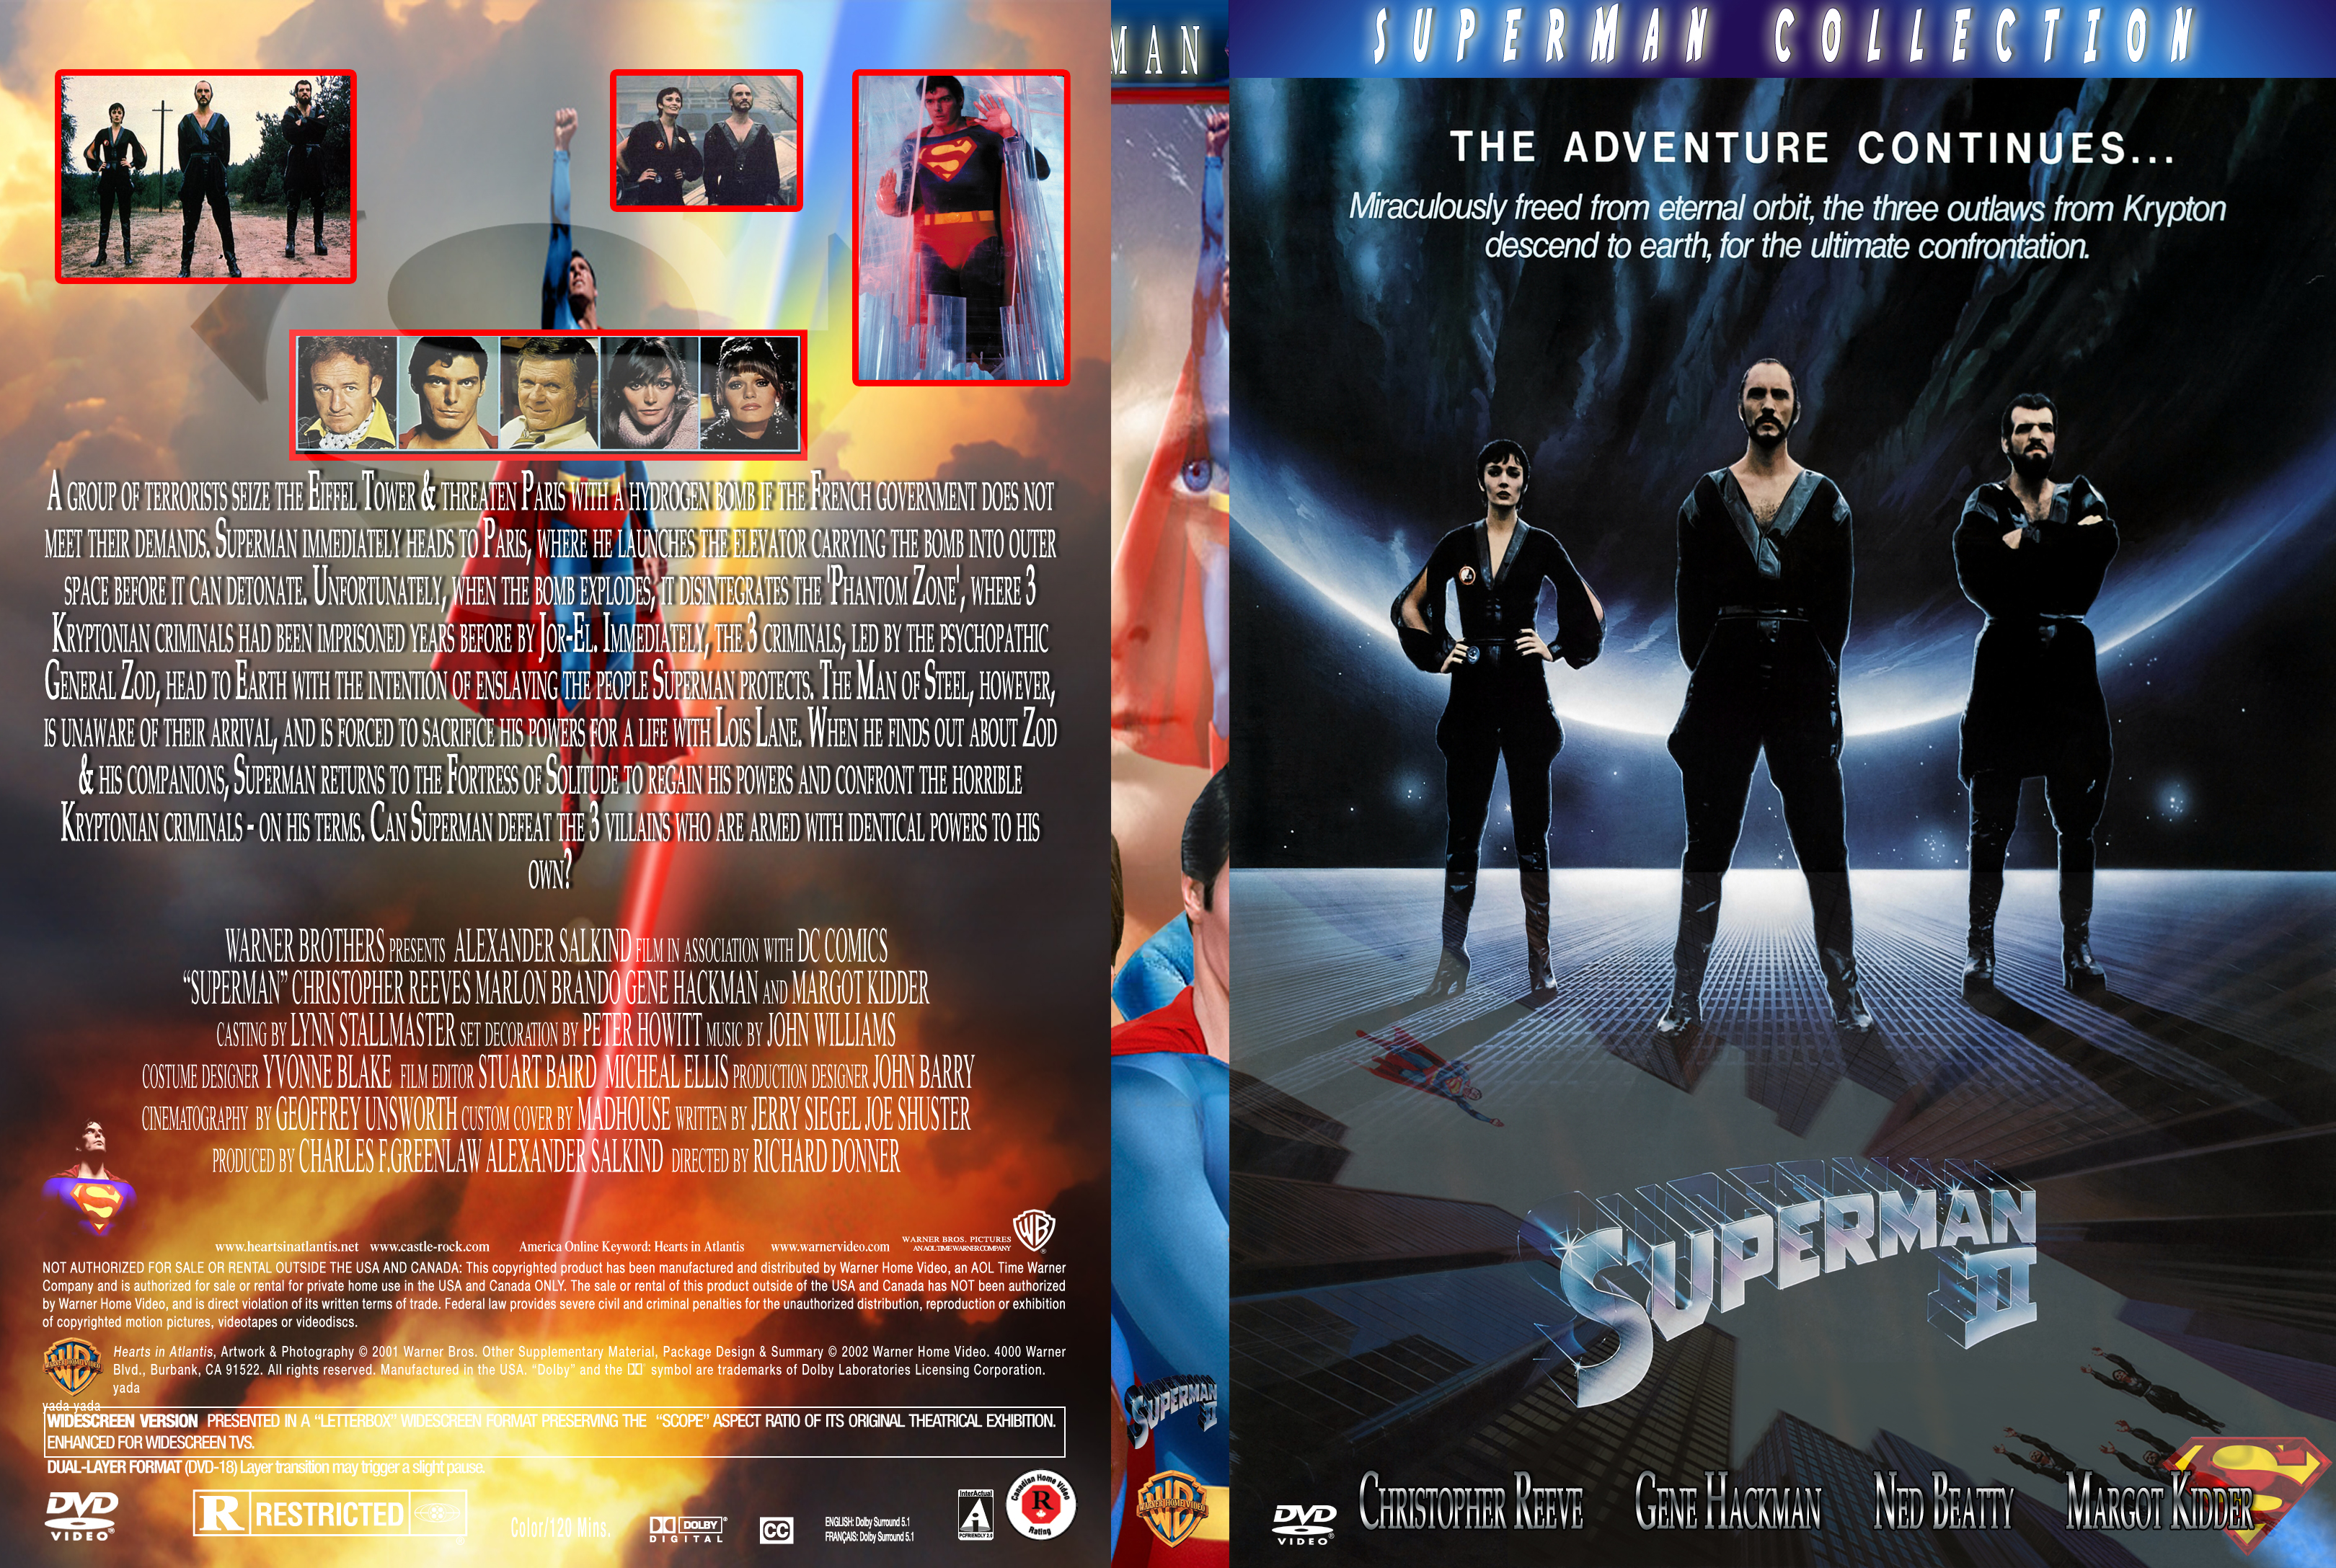 SUPER-MAN2